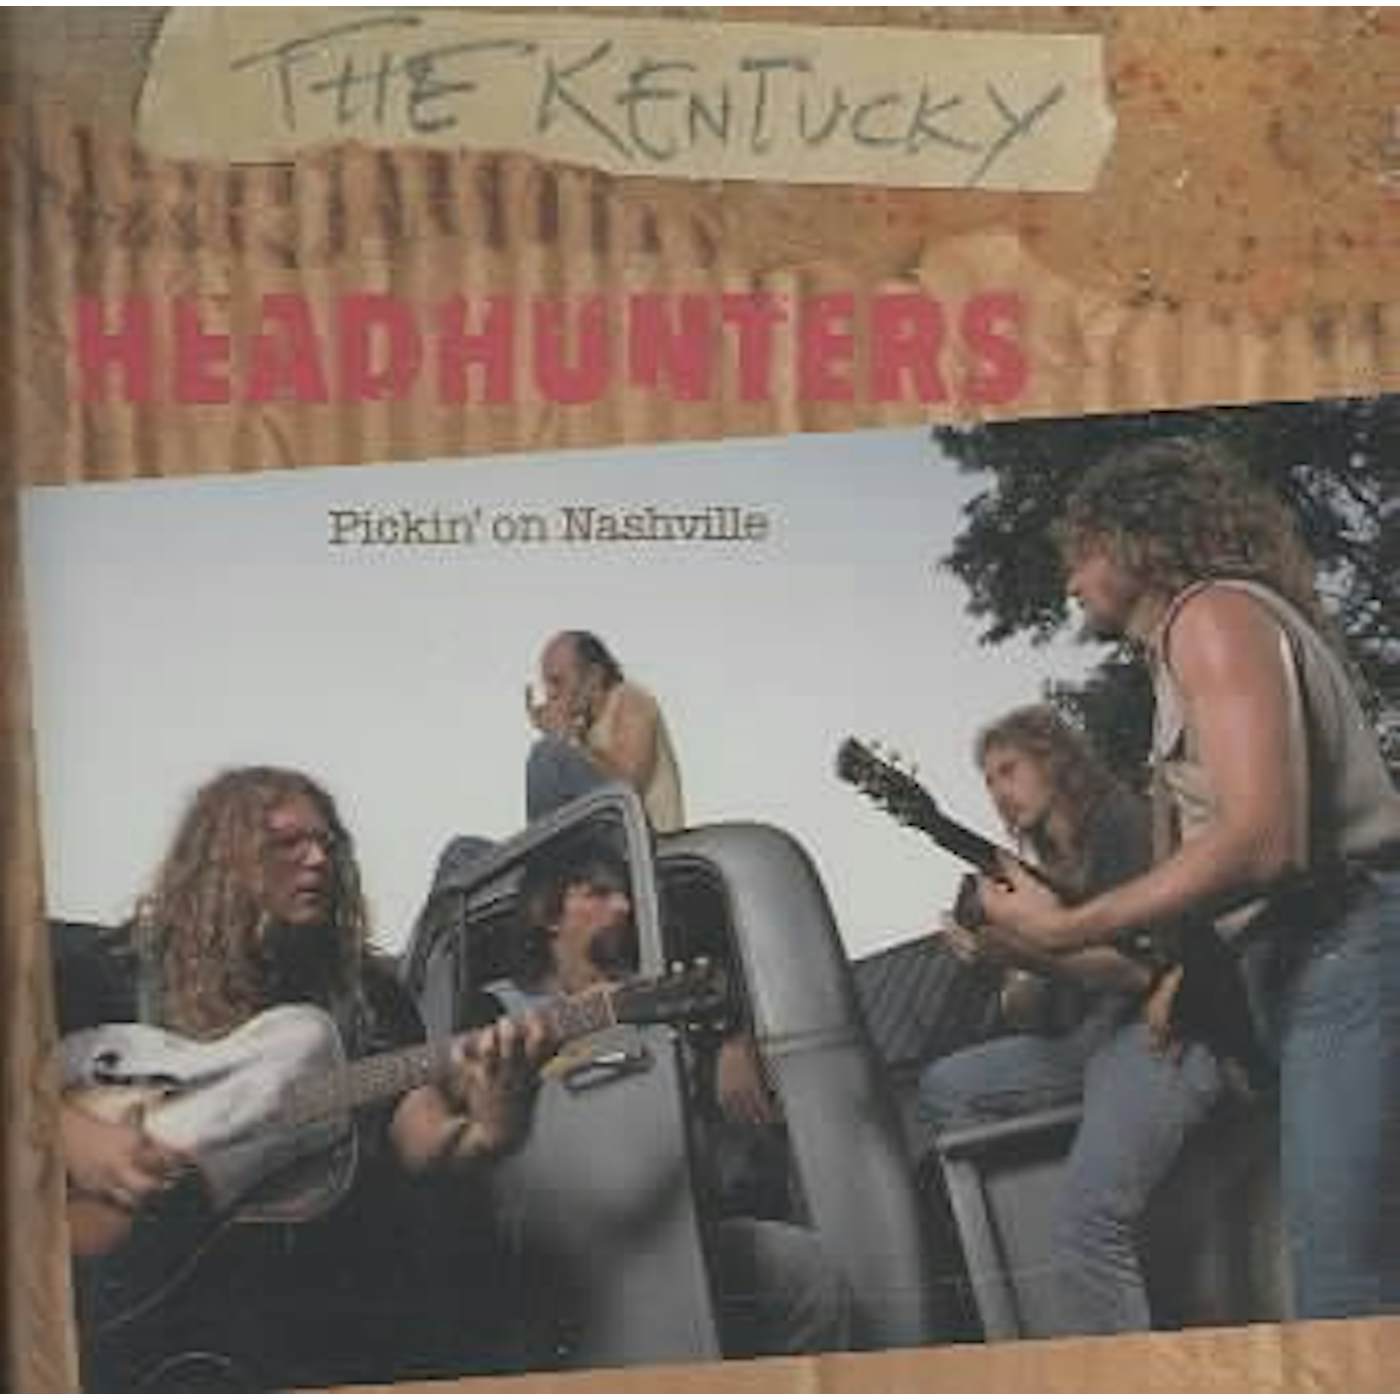 The Kentucky Headhunters Pickin' On Nashville CD